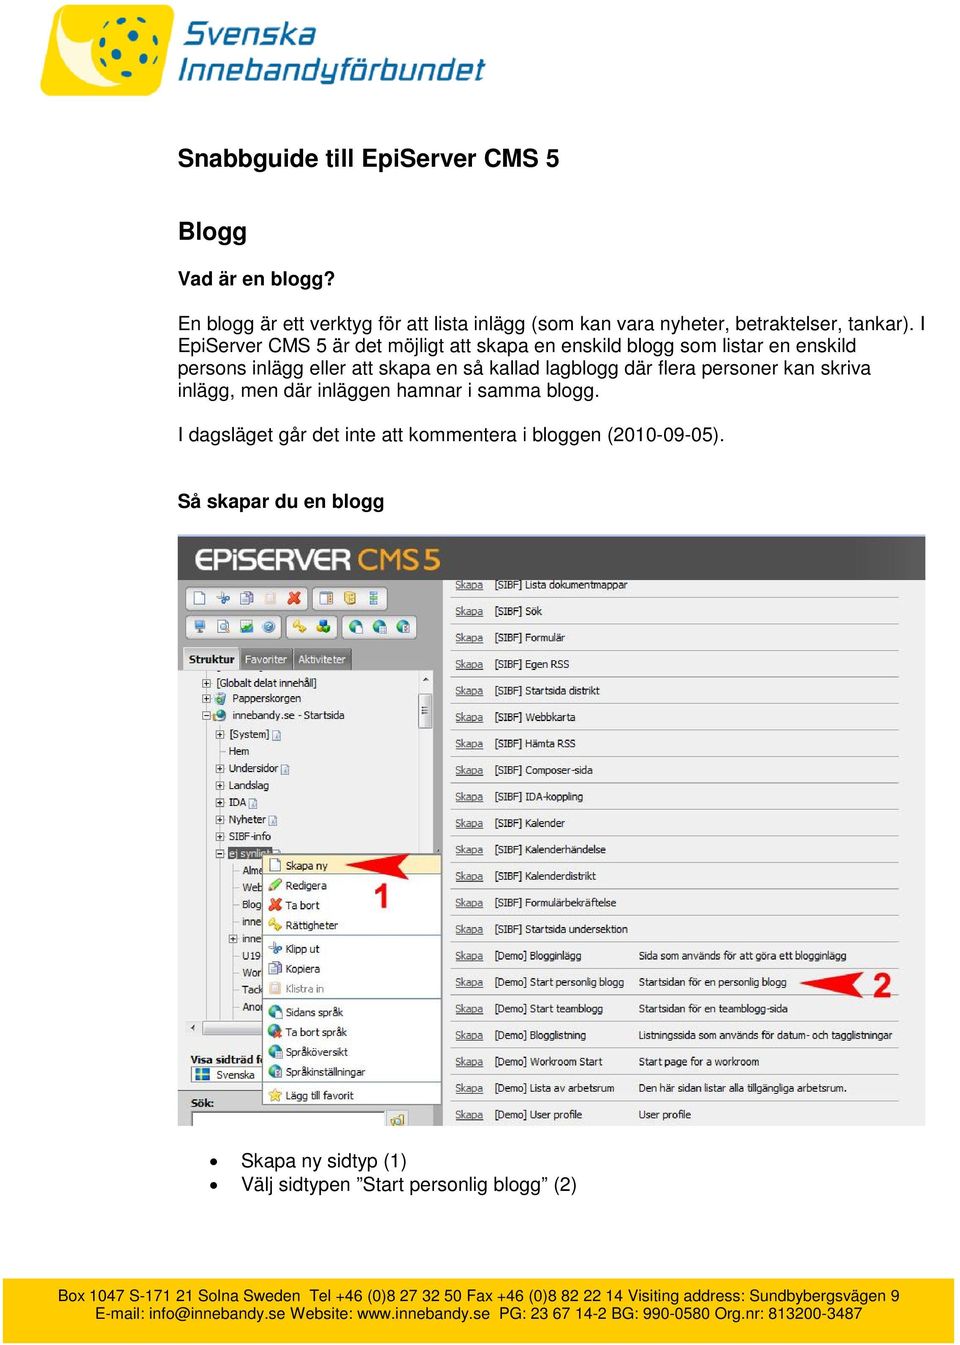 I EpiServer CMS 5 är det möjligt att skapa en enskild blogg som listar en enskild persons inlägg eller att skapa en så kallad